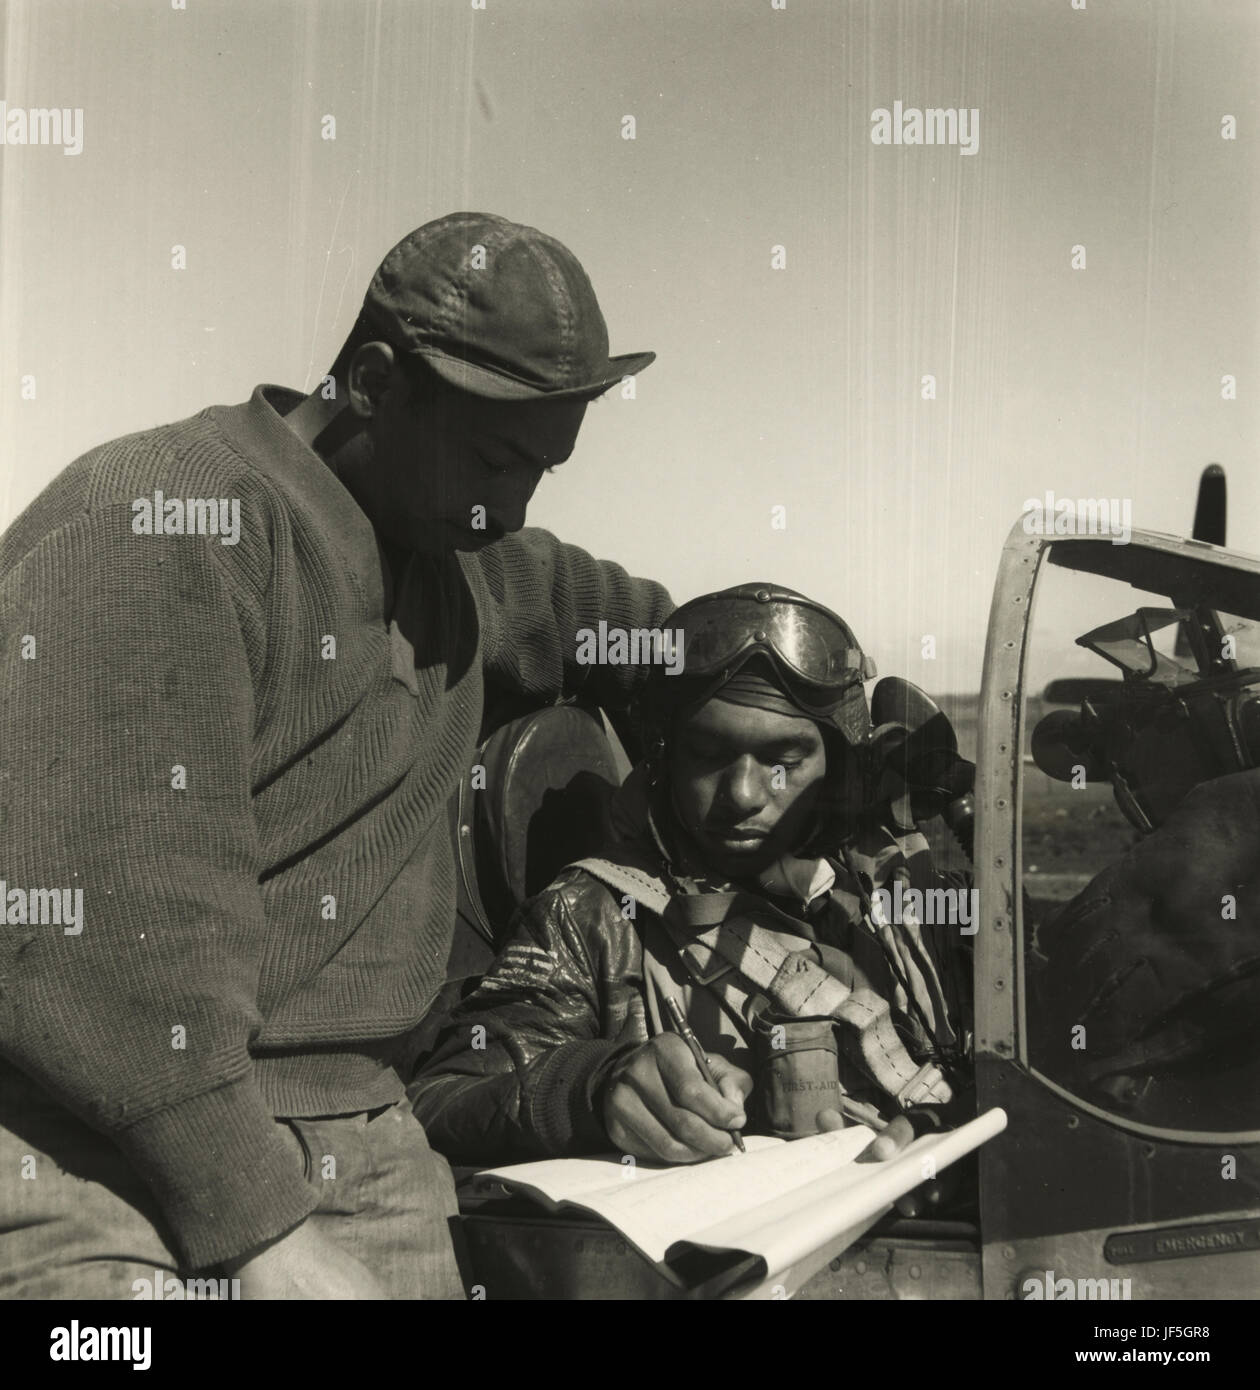 Les aviateurs de Tuskegee est le nom populaire d'un groupe d'africains-américains de pilotes militaires qui ont combattu pendant la seconde guerre mondiale, officiellement ils ont formé la 332e Fighter Group et le groupe de bombardement 477th la United States Army Air Forces. tous les pilotes militaires noirs qui formés aux Etats-Unis formé au champ moton, le champ de l'air de l'armée de Tuskegee, et ont fait leurs études à l'université Tuskegee, situé près de tuskegee, Alabama. Banque D'Images